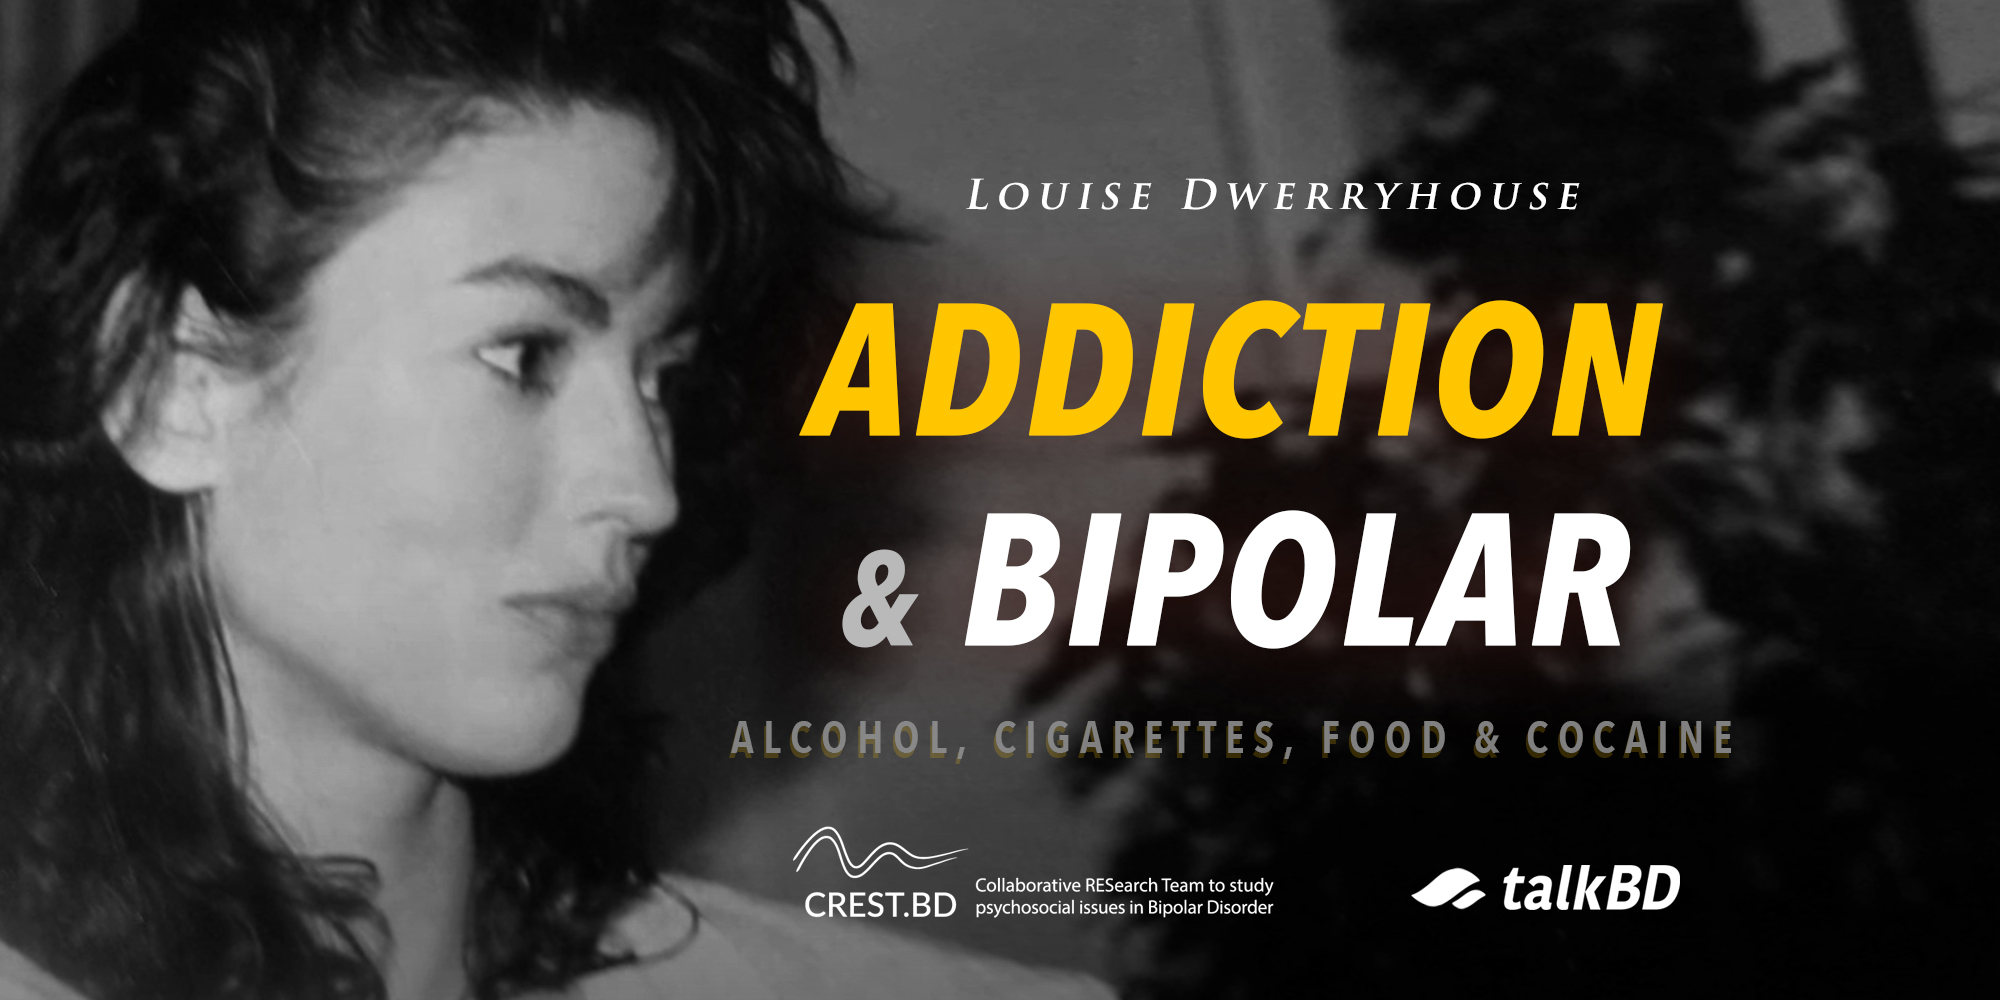 Addiction & Bipolar: Alcohol, Cigarettes, Food & Cocaine